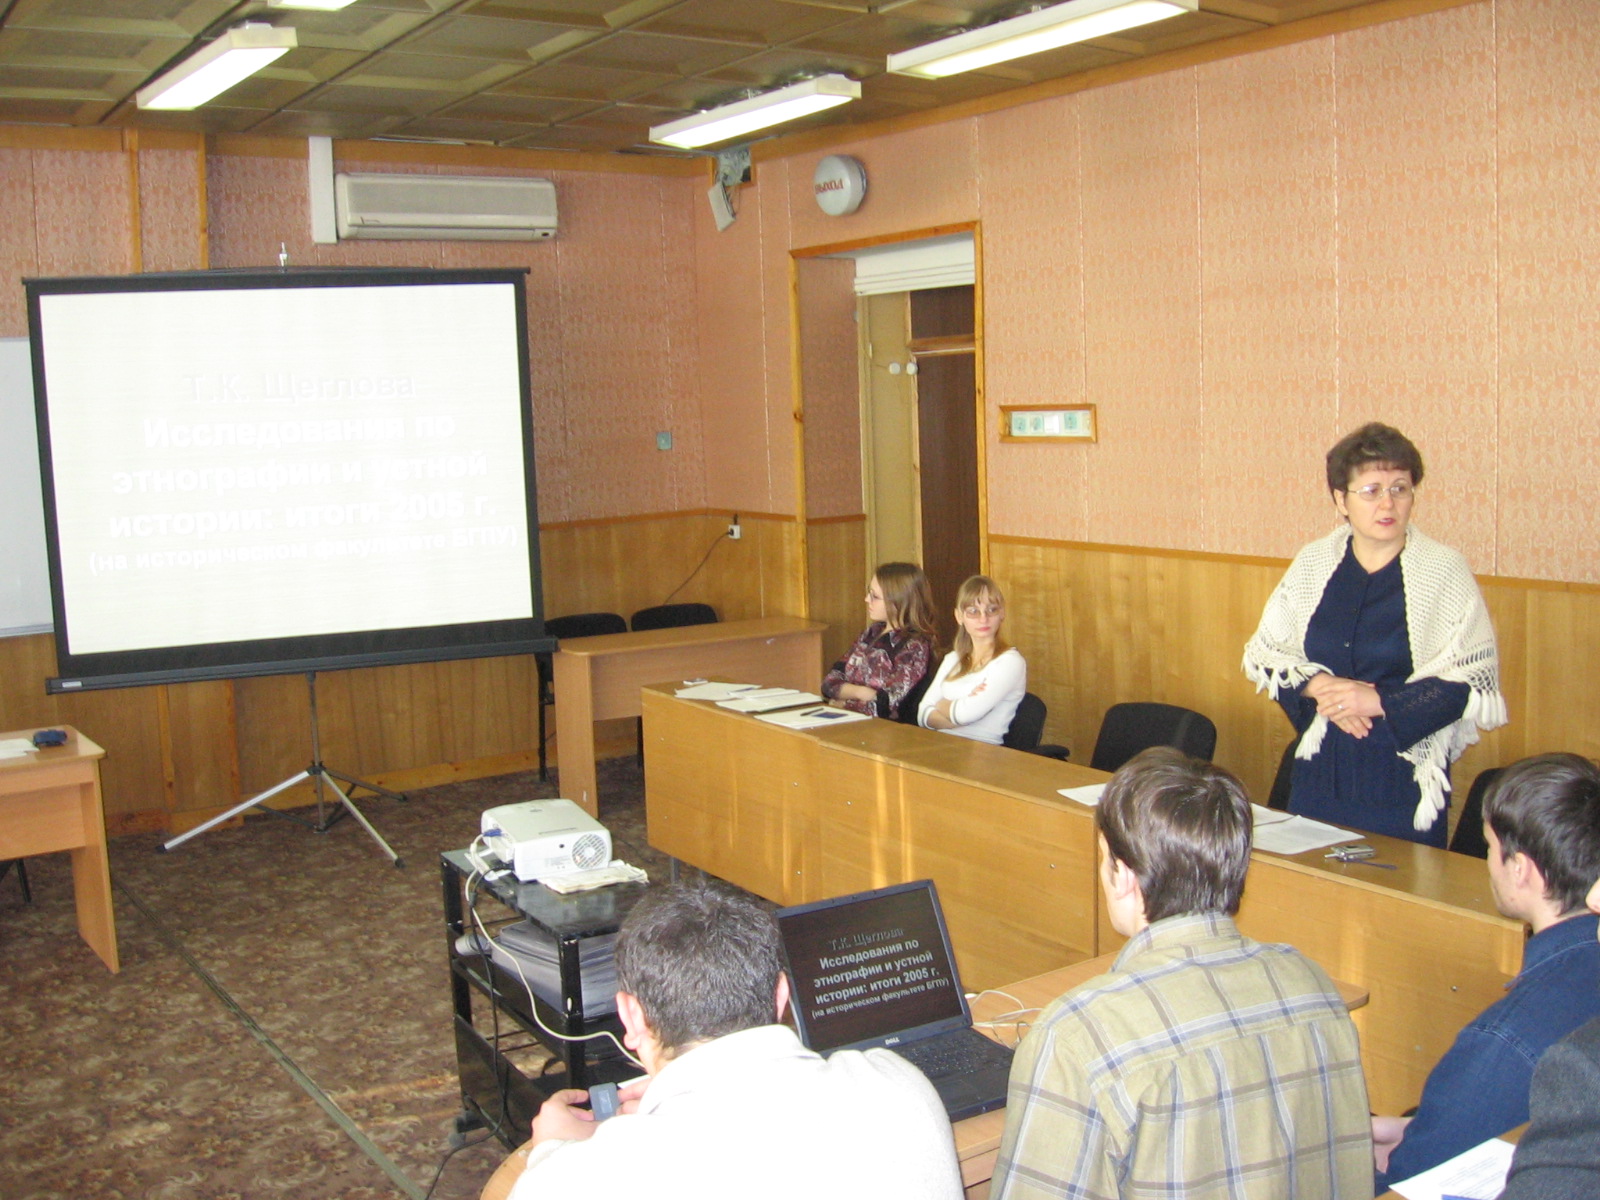 Пленарное заседание. Выступает д.и.н., проф. Т.К. Щеглова. За ней сидят Аня Симкова, Таня Шишмакова.